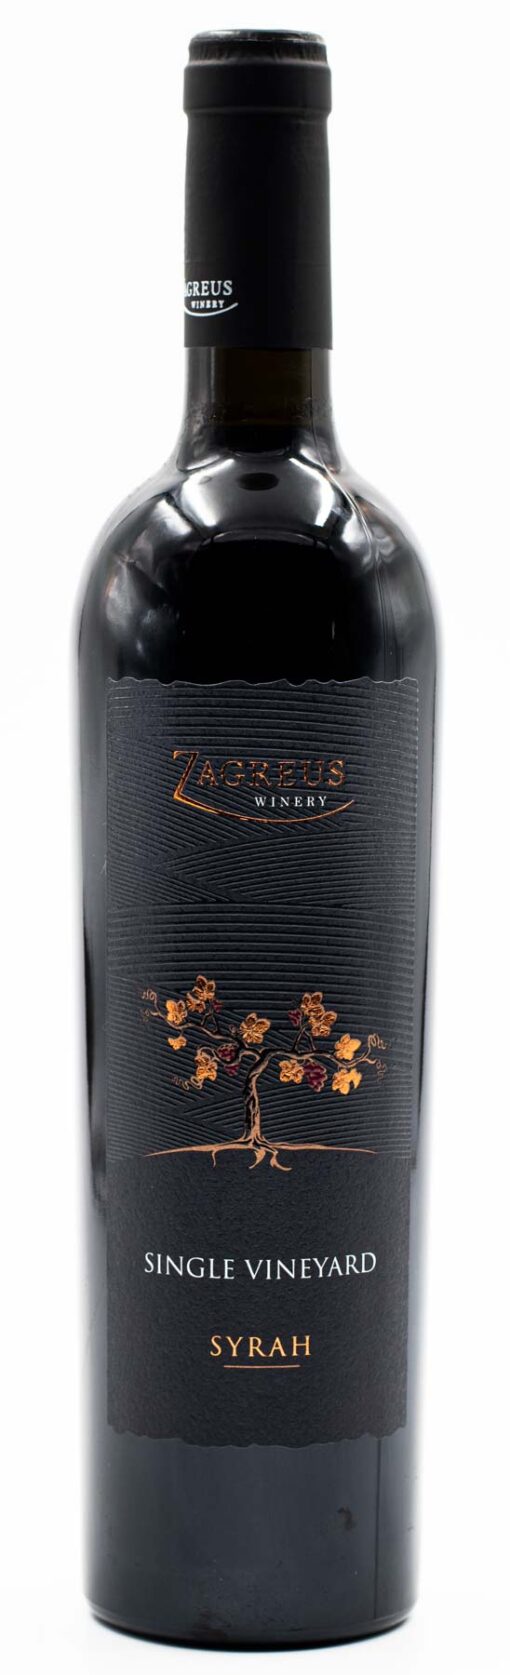 Zagreus Syrah - fľaše bulharského vína